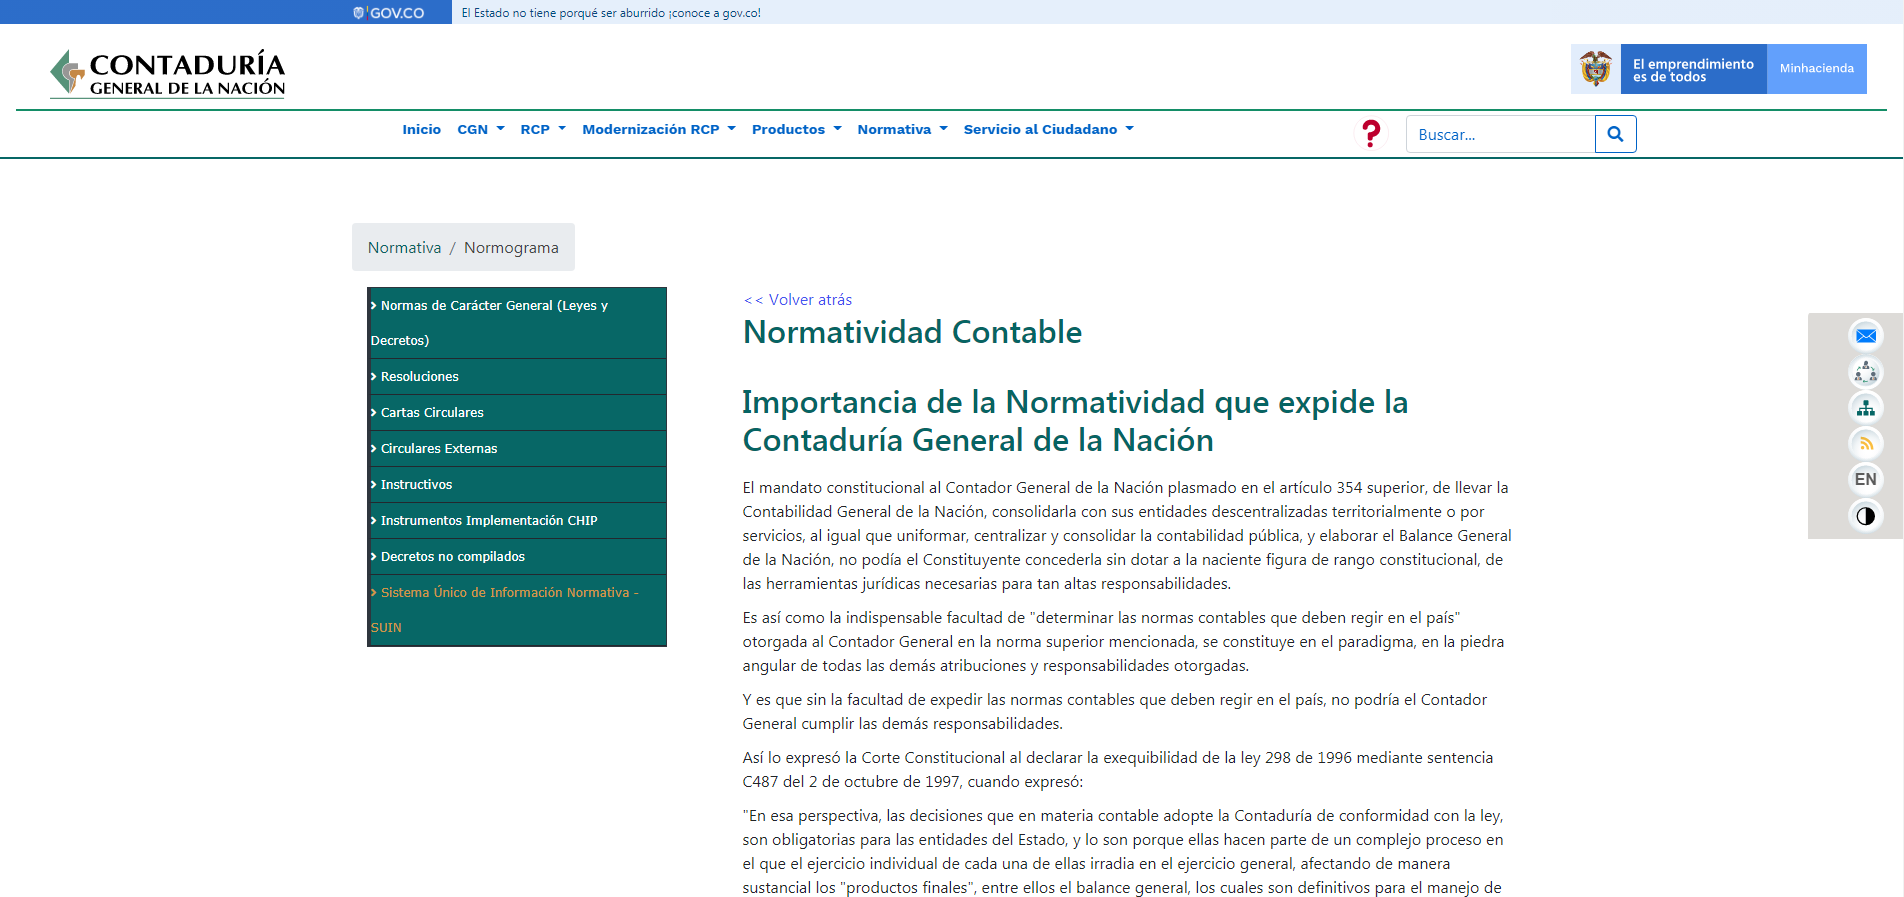 Sección de Normativa de la Página Web de la Contaduría General de la Nación